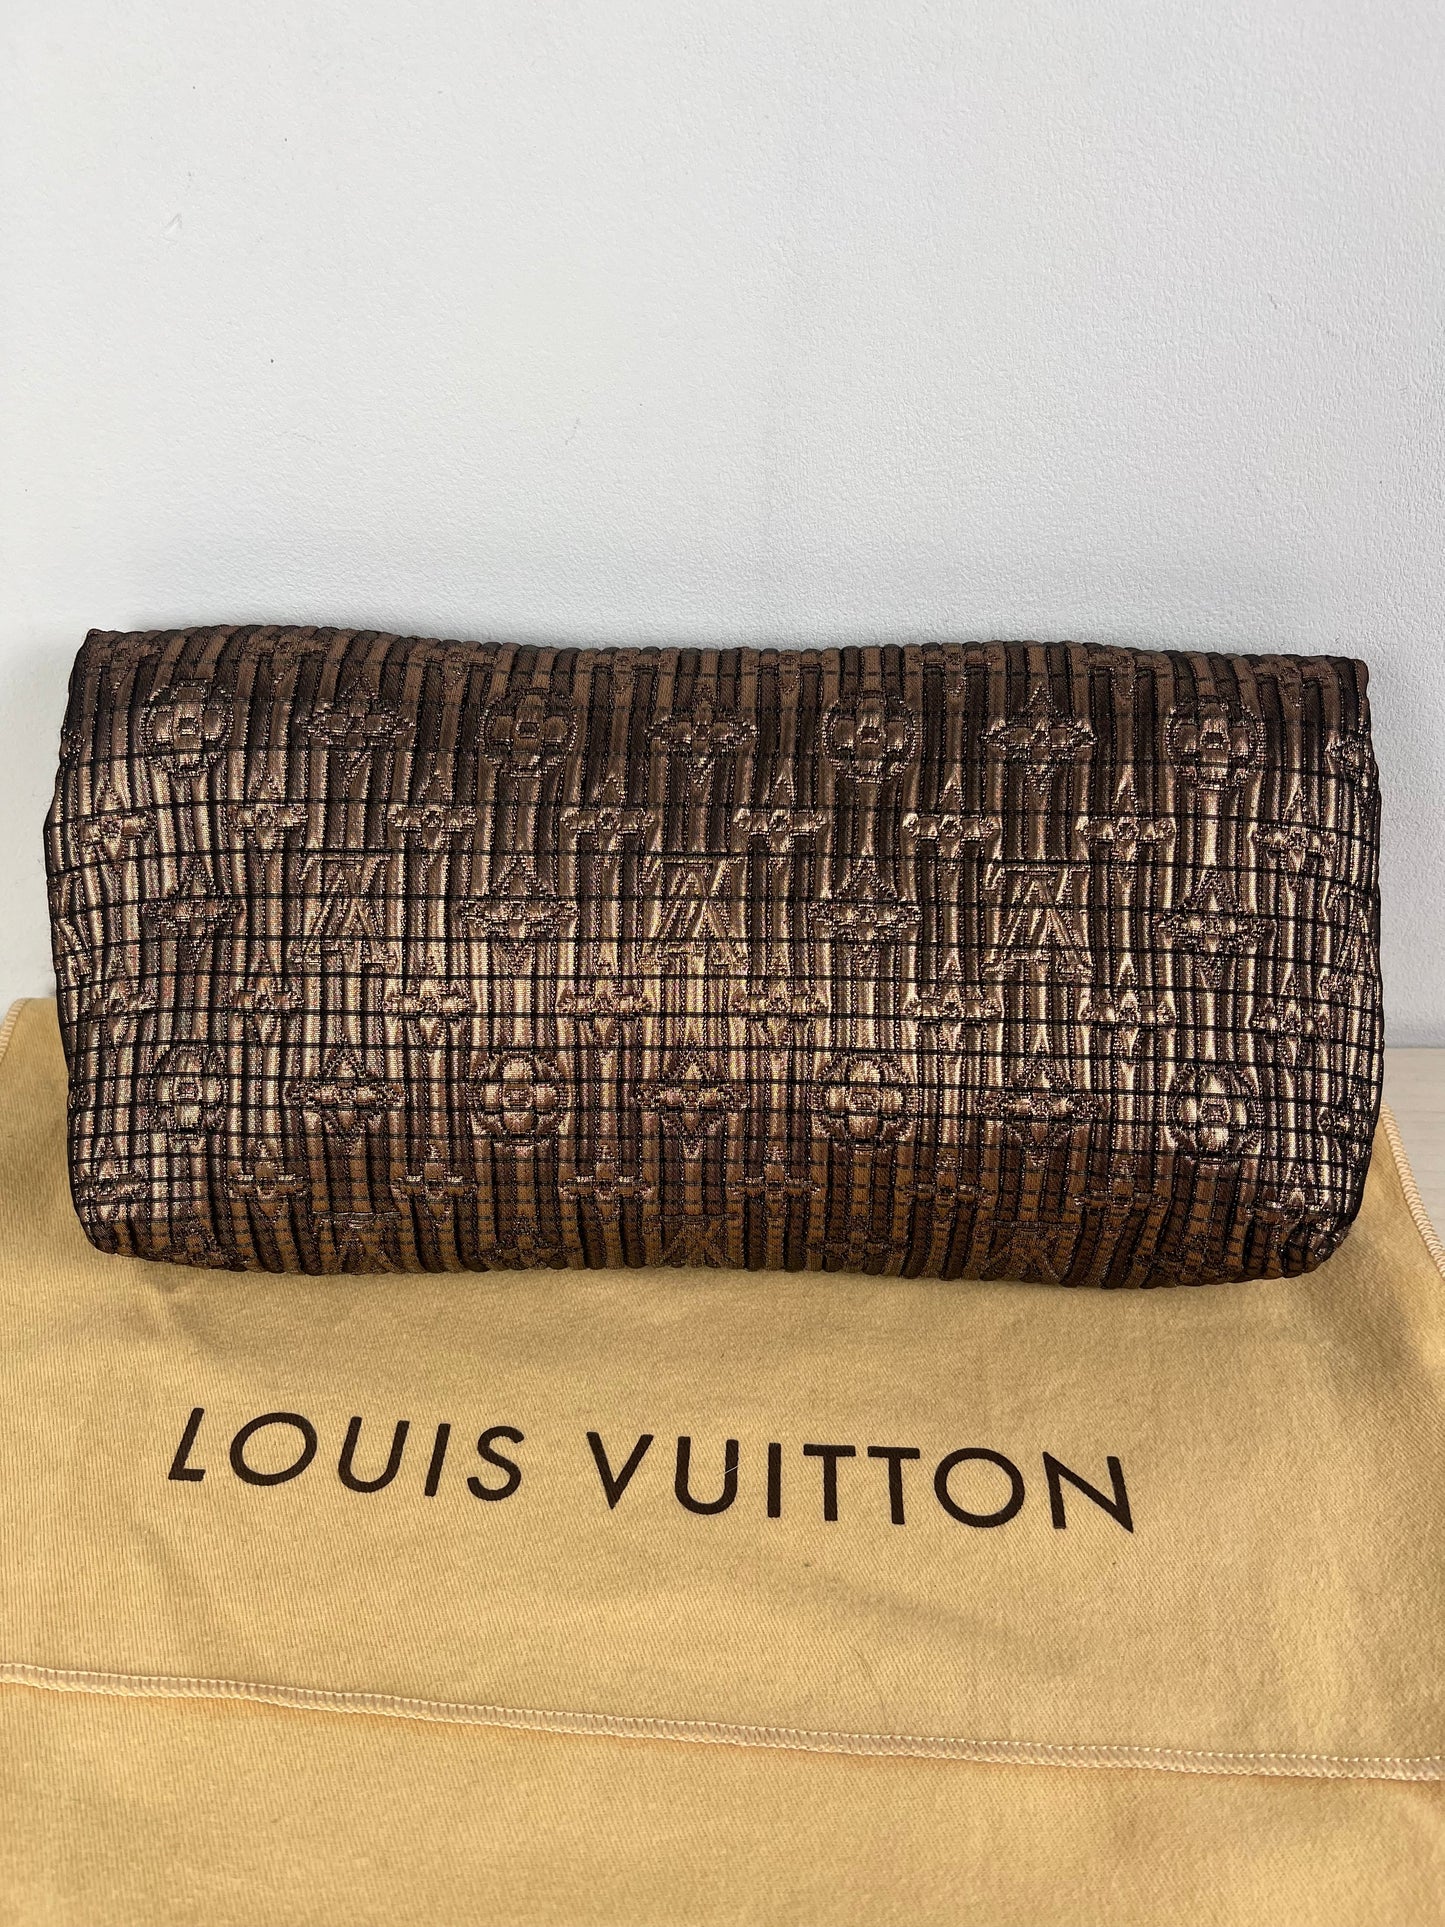 Clutch Luxury Designer Louis Vuitton, Size Medium